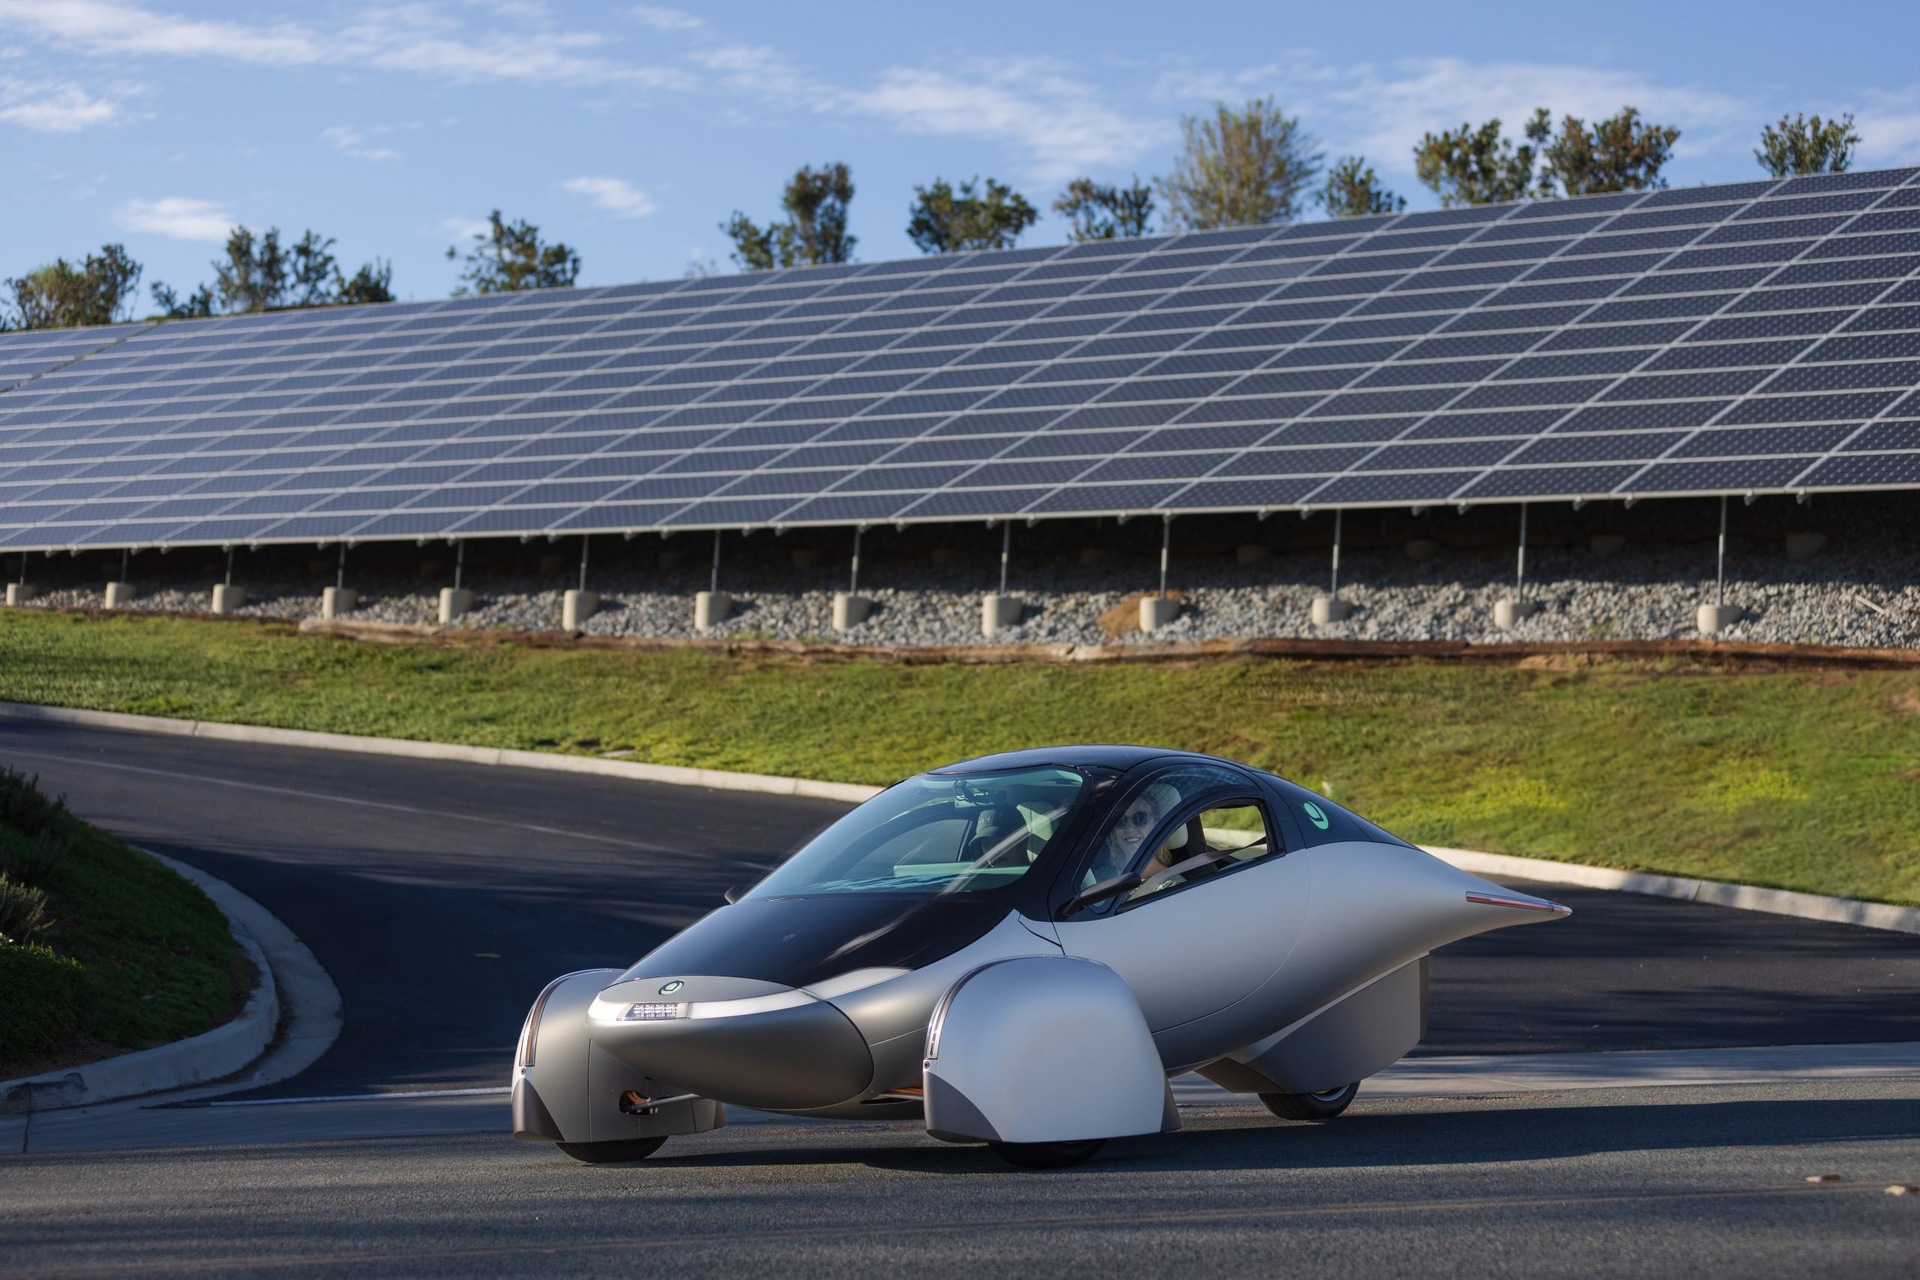 Samochód na energię słoneczną: Aptera Delta to najbardziej ekologiczny samochód na świecie, o zasięgu 1600 km na zasilaniu bateryjnym i 70 km na energii słonecznej